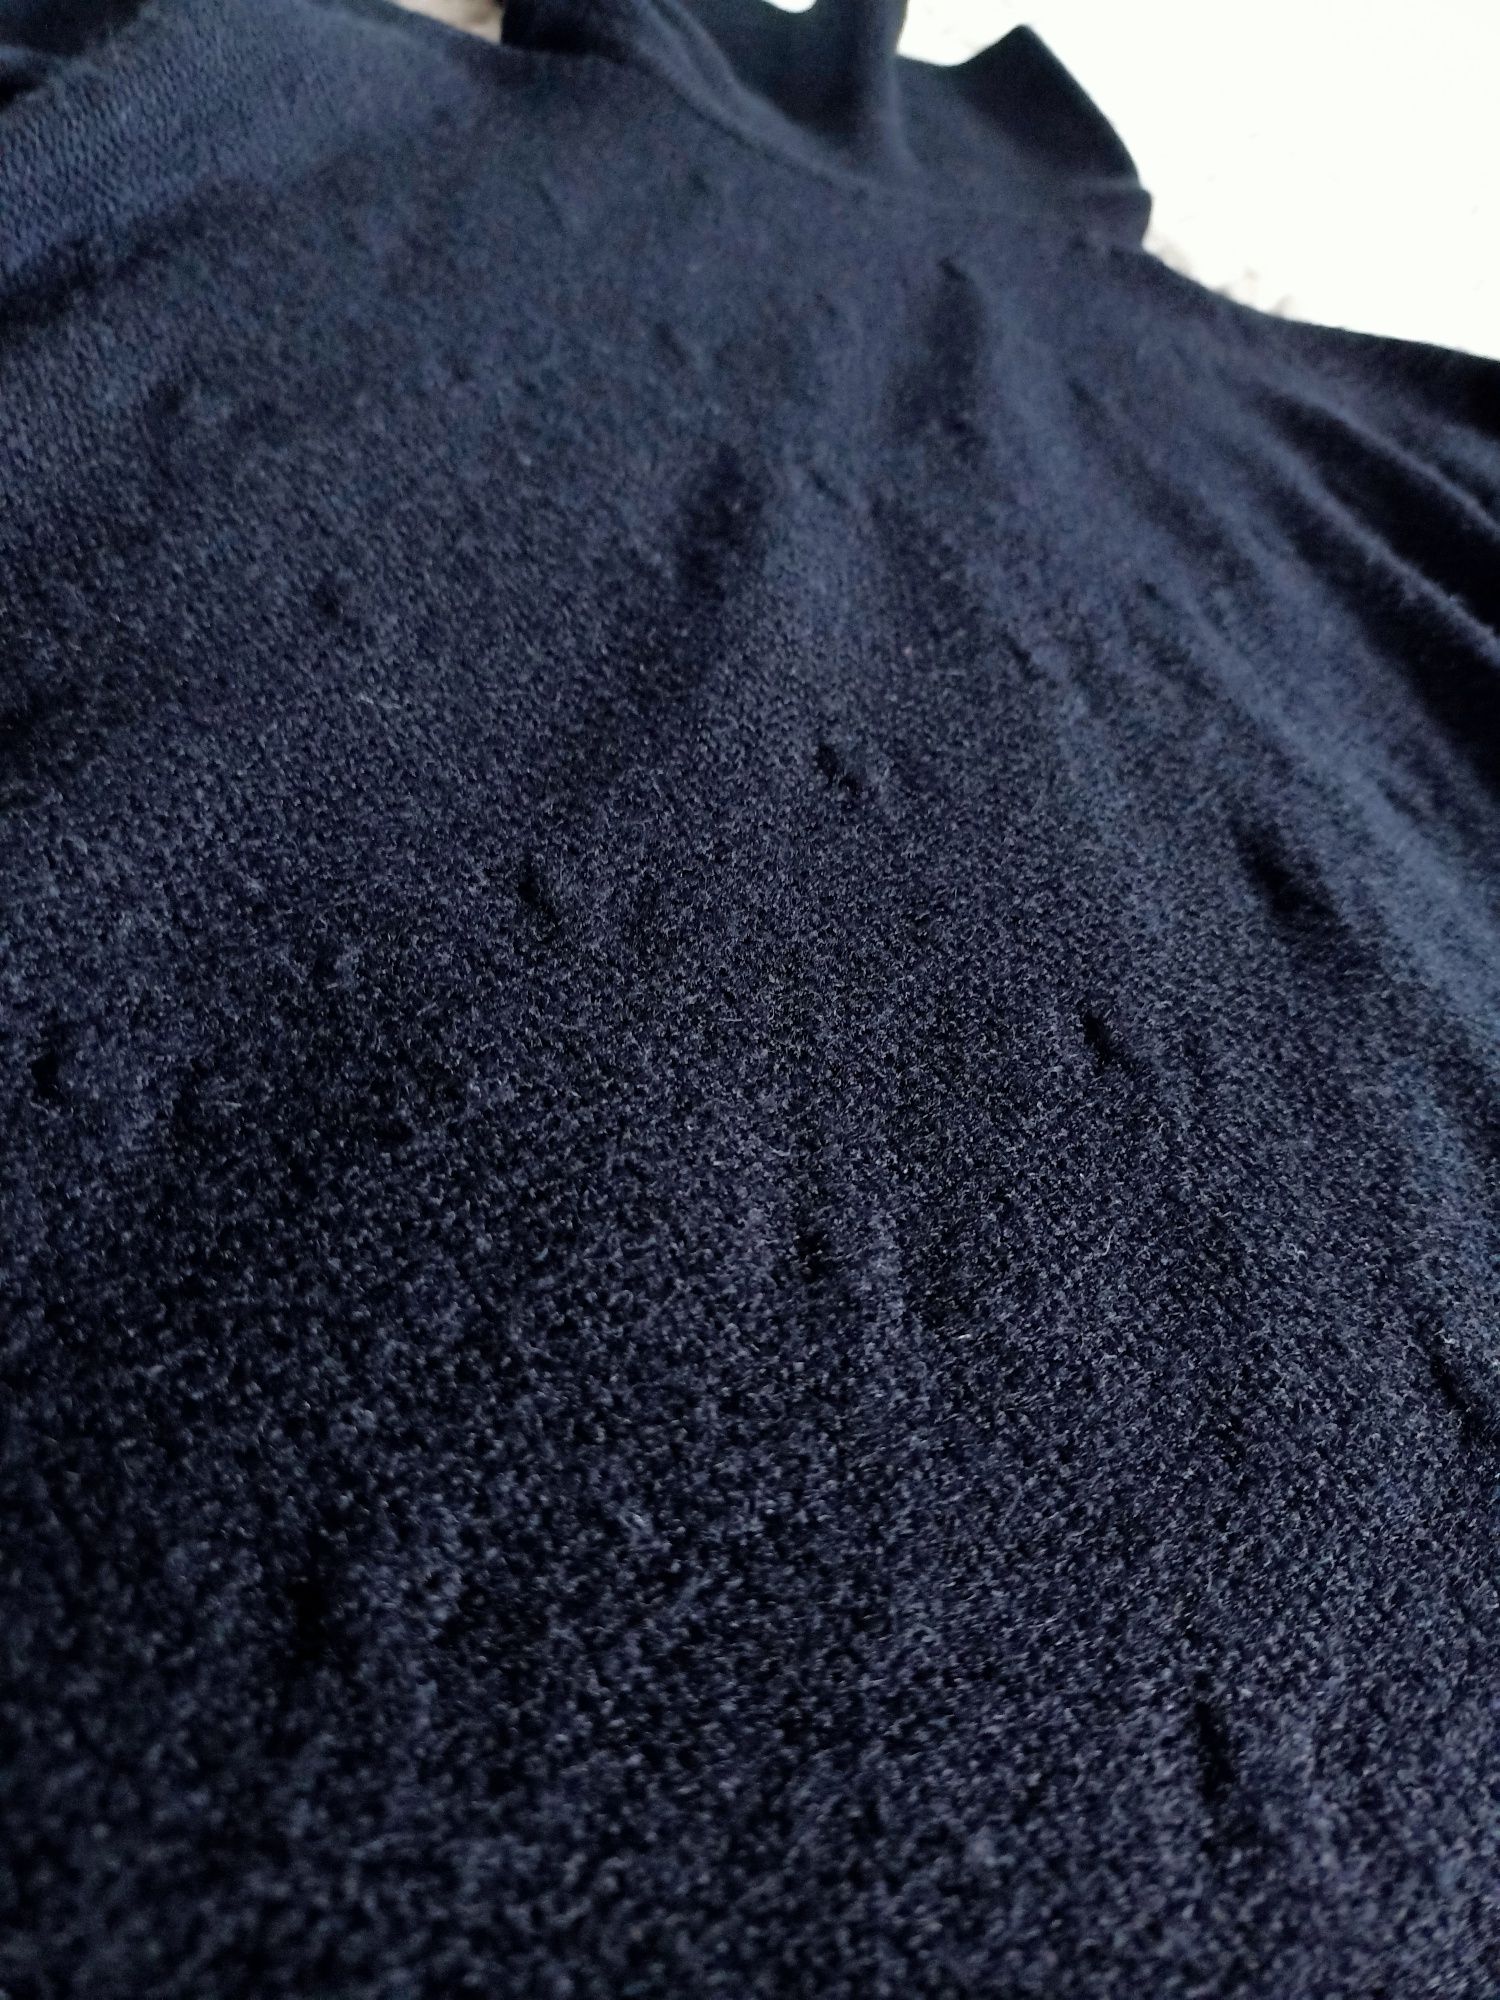 Czarny dłuższy sweter/golf, S/M